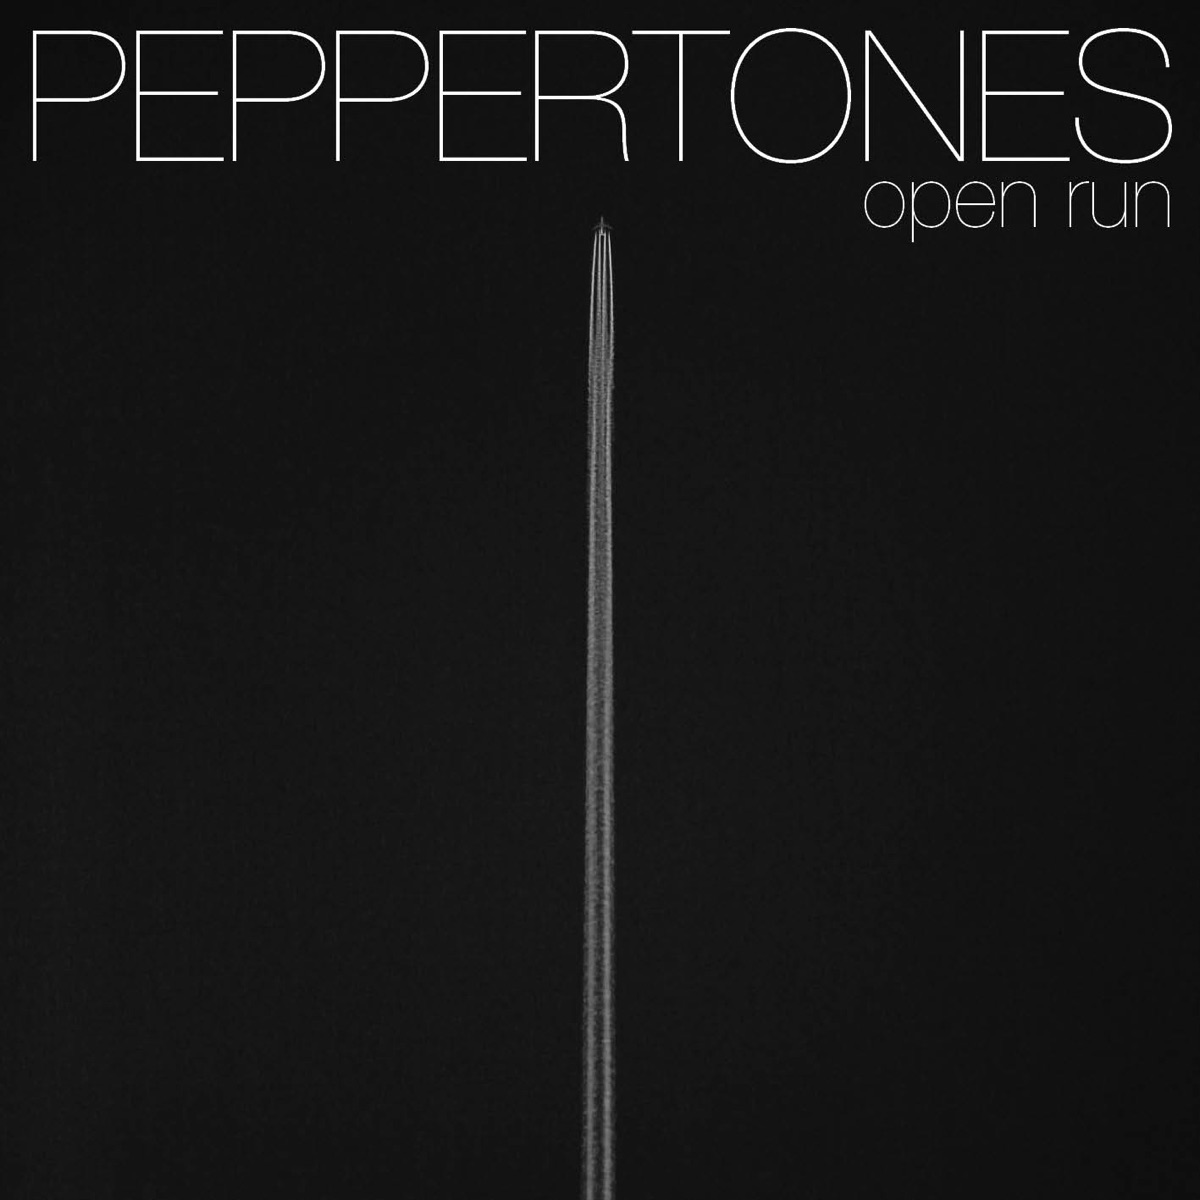 Peppertones – Open Run – EP